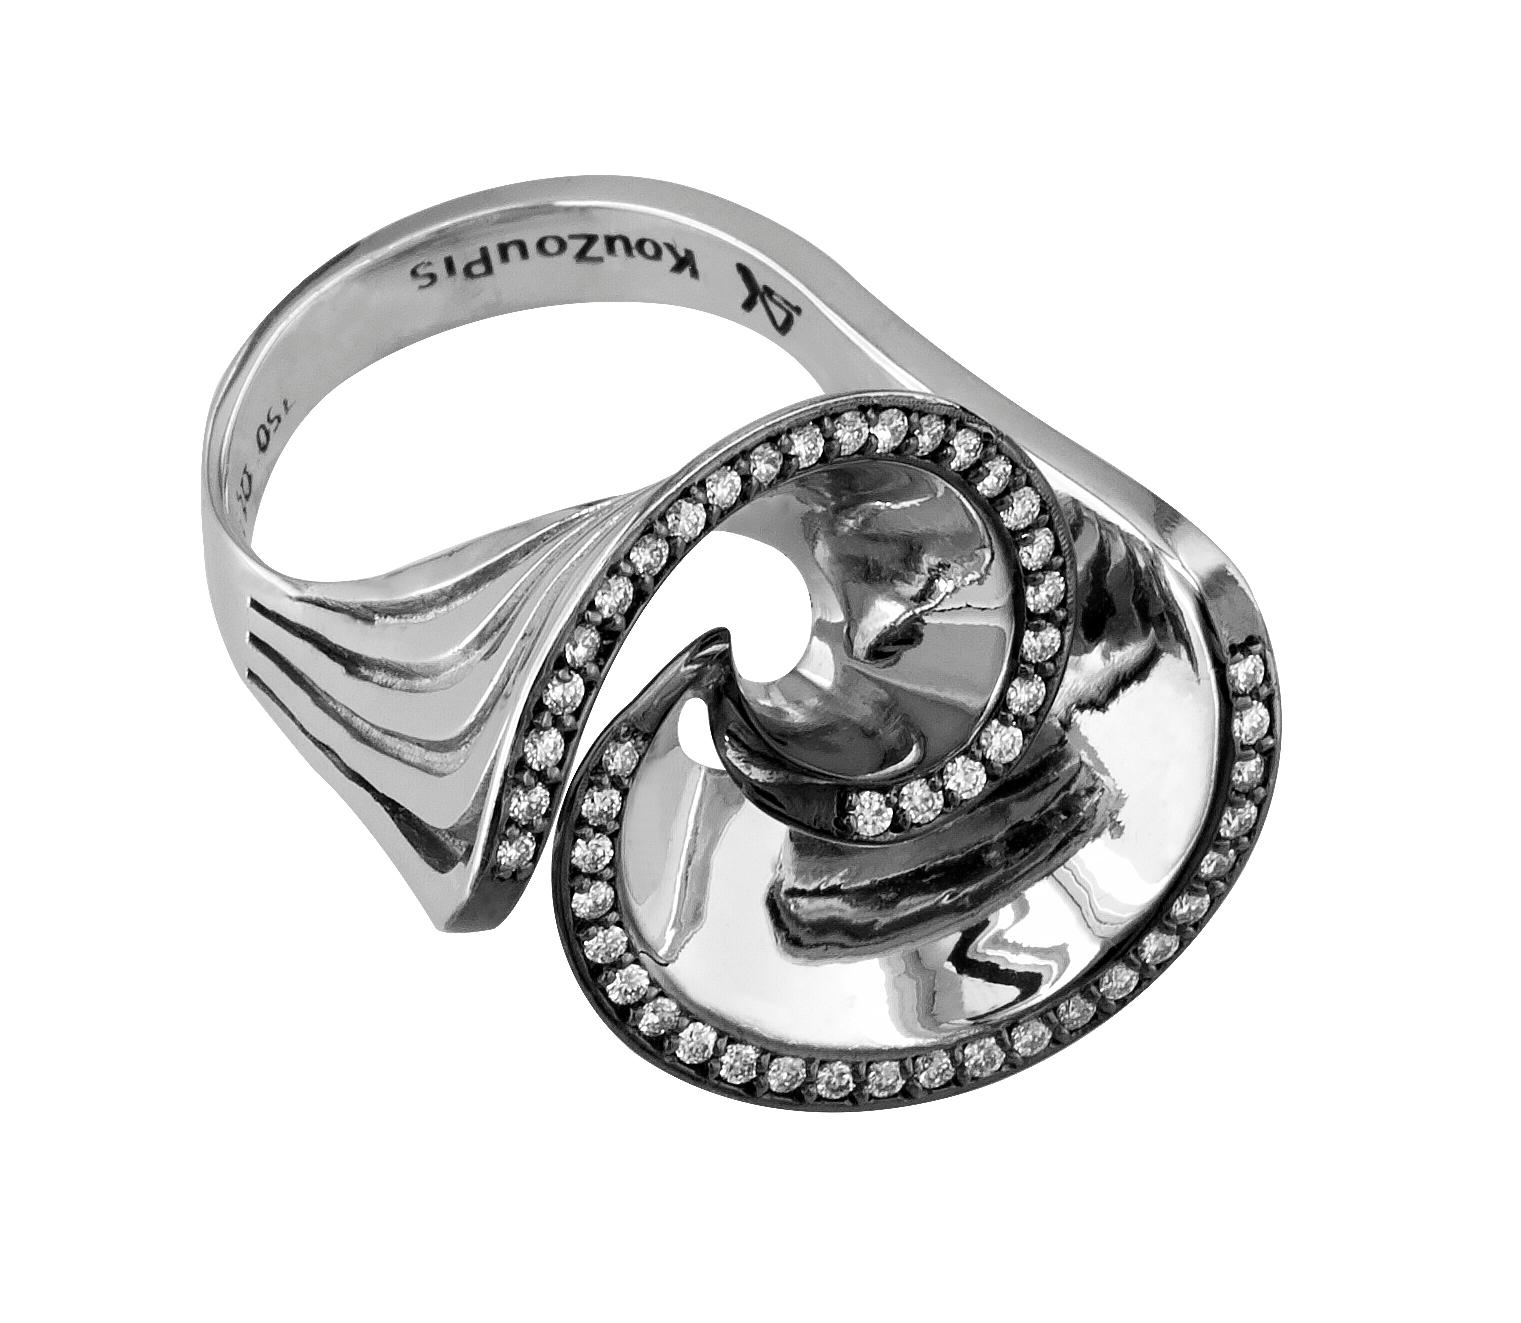 S.Georgios Designer-Ring aus 18 Karat Weißgold wird von Hand gefertigt. Dieses wunderschöne, einzigartige Kunstwerk verfügt über 49 weiße Diamanten im Brillantschliff mit einem Gesamtgewicht von 0,43 Karat. Wir haben die Diamanten mit schwarzem